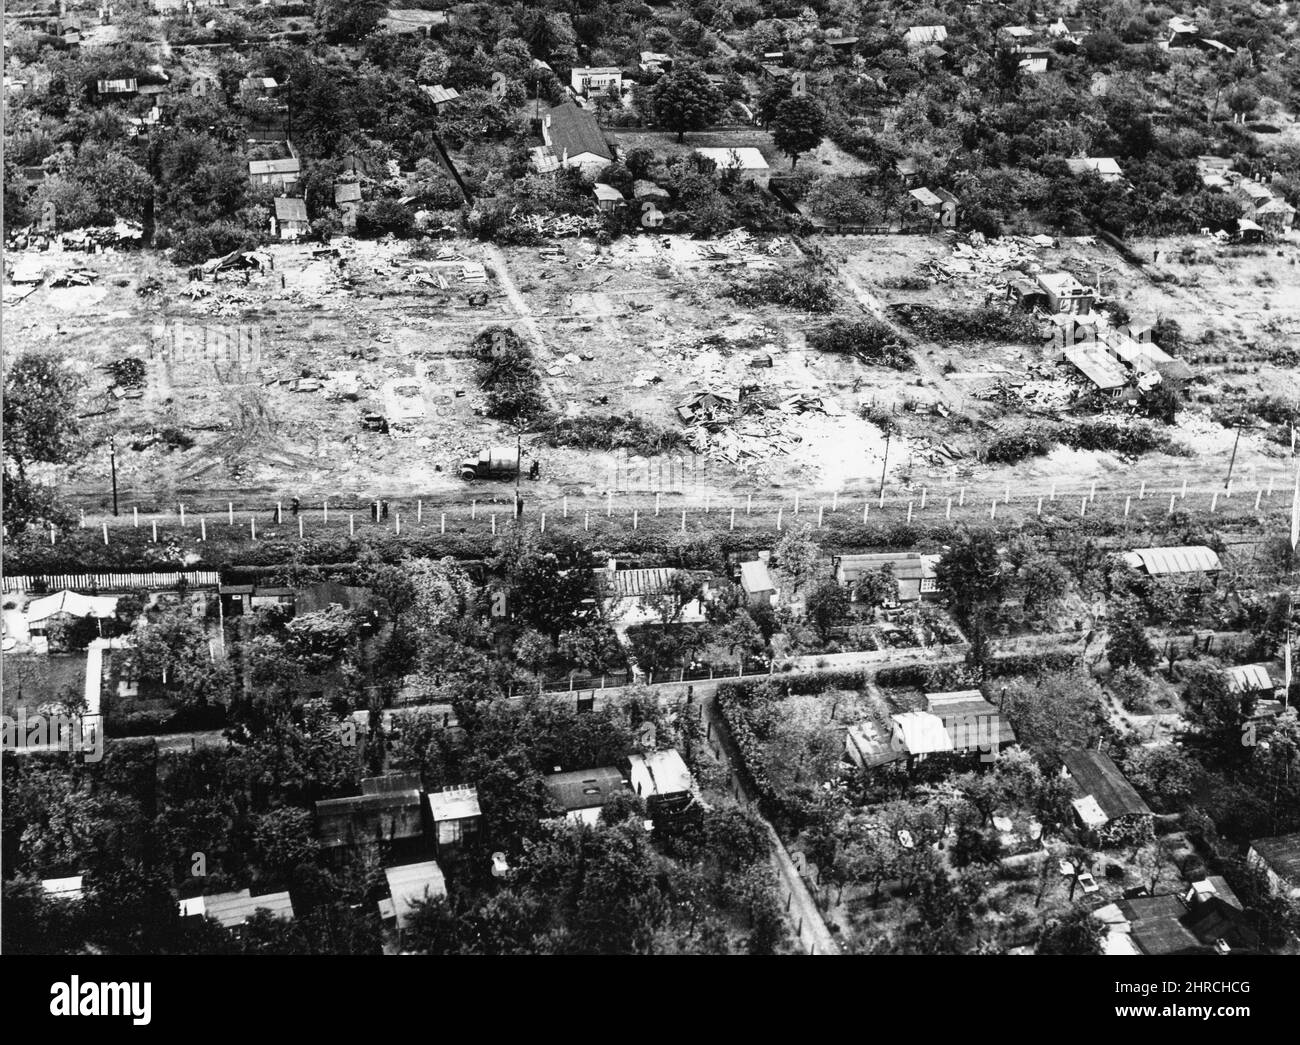 Vue aérienne montrant les maisons en cours de défricher pour faire une 'piste de 100 mètres (33 pieds) sur le côté est de Berlin de la frontière à Koellnische Haide Nau Koslin. Berlin, Allemagne. Octobre 1961. Banque D'Images